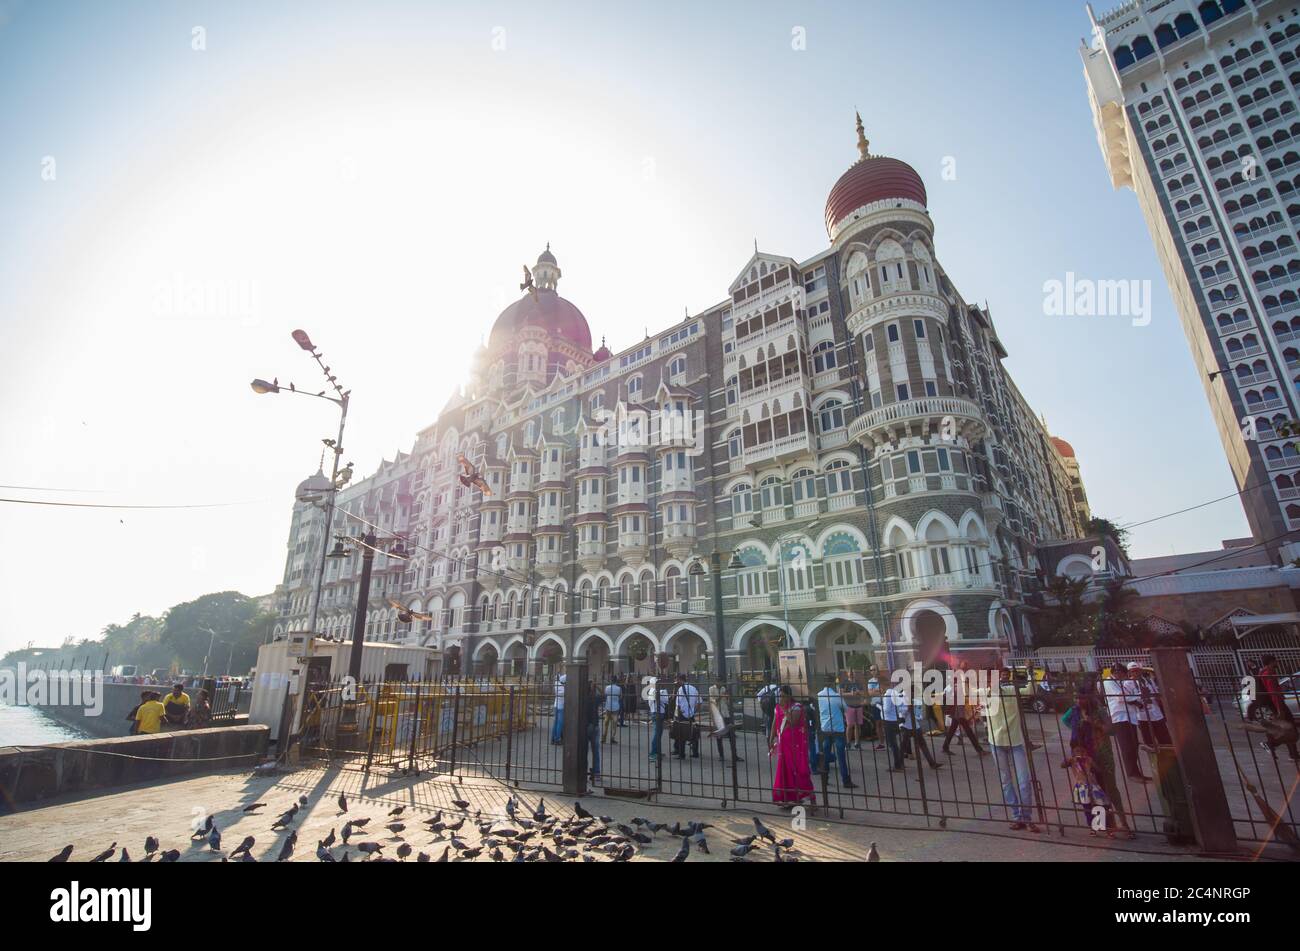 Mumbai, India - December 17, 2018: Taj Mahal Palace Hotel in Bombay, Asia. Stock Photo